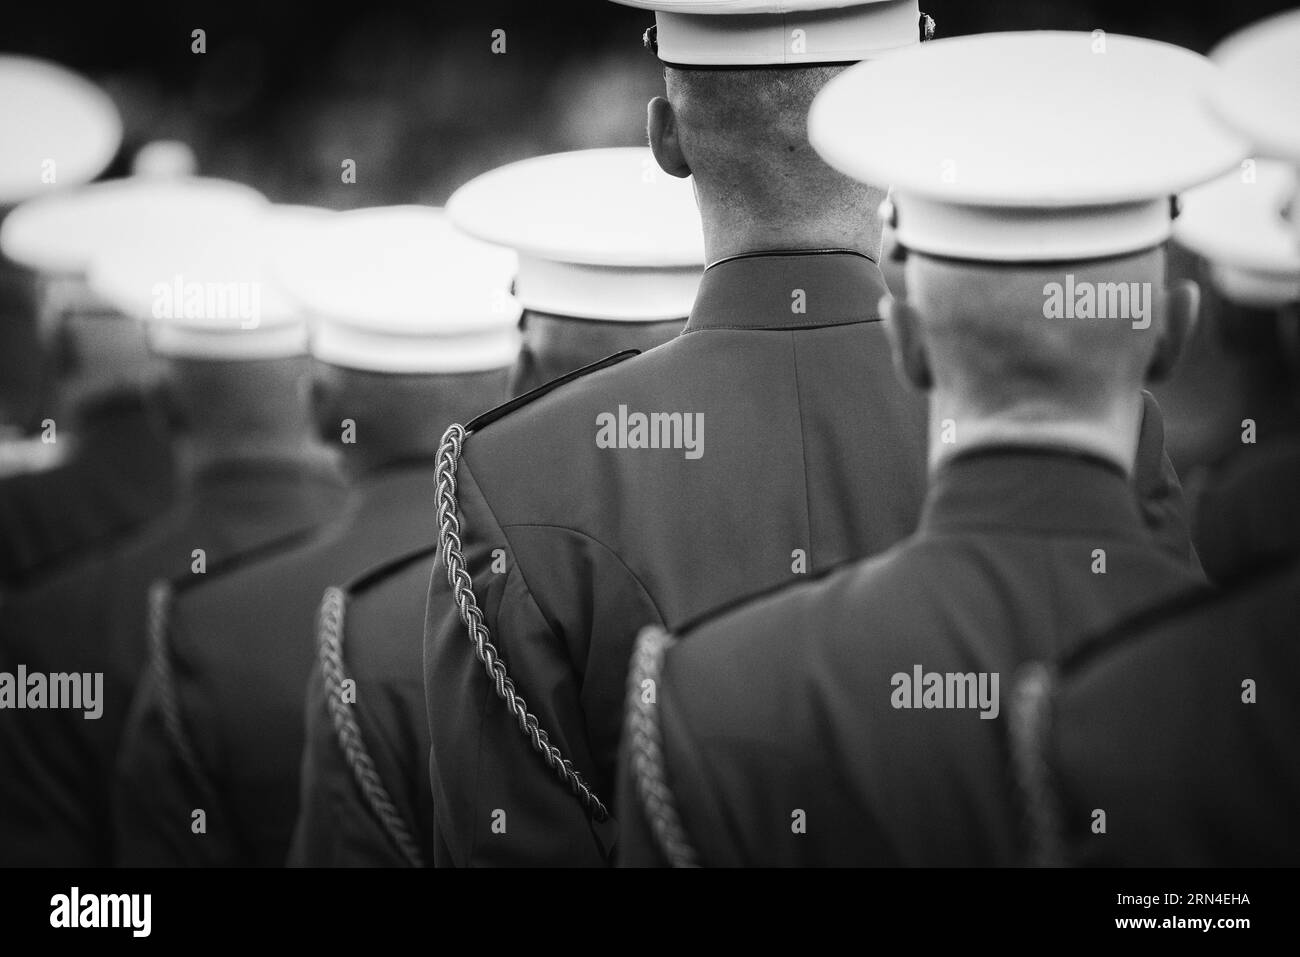 ARLINGTON, Virginia, EE.UU. - el Monumento a la Guerra del cuerpo de Marines de los Estados Unidos (conocido a menudo como el Monumento a Iwo Jima) en Arlington, Virginia. Sentado solo acr Foto de stock